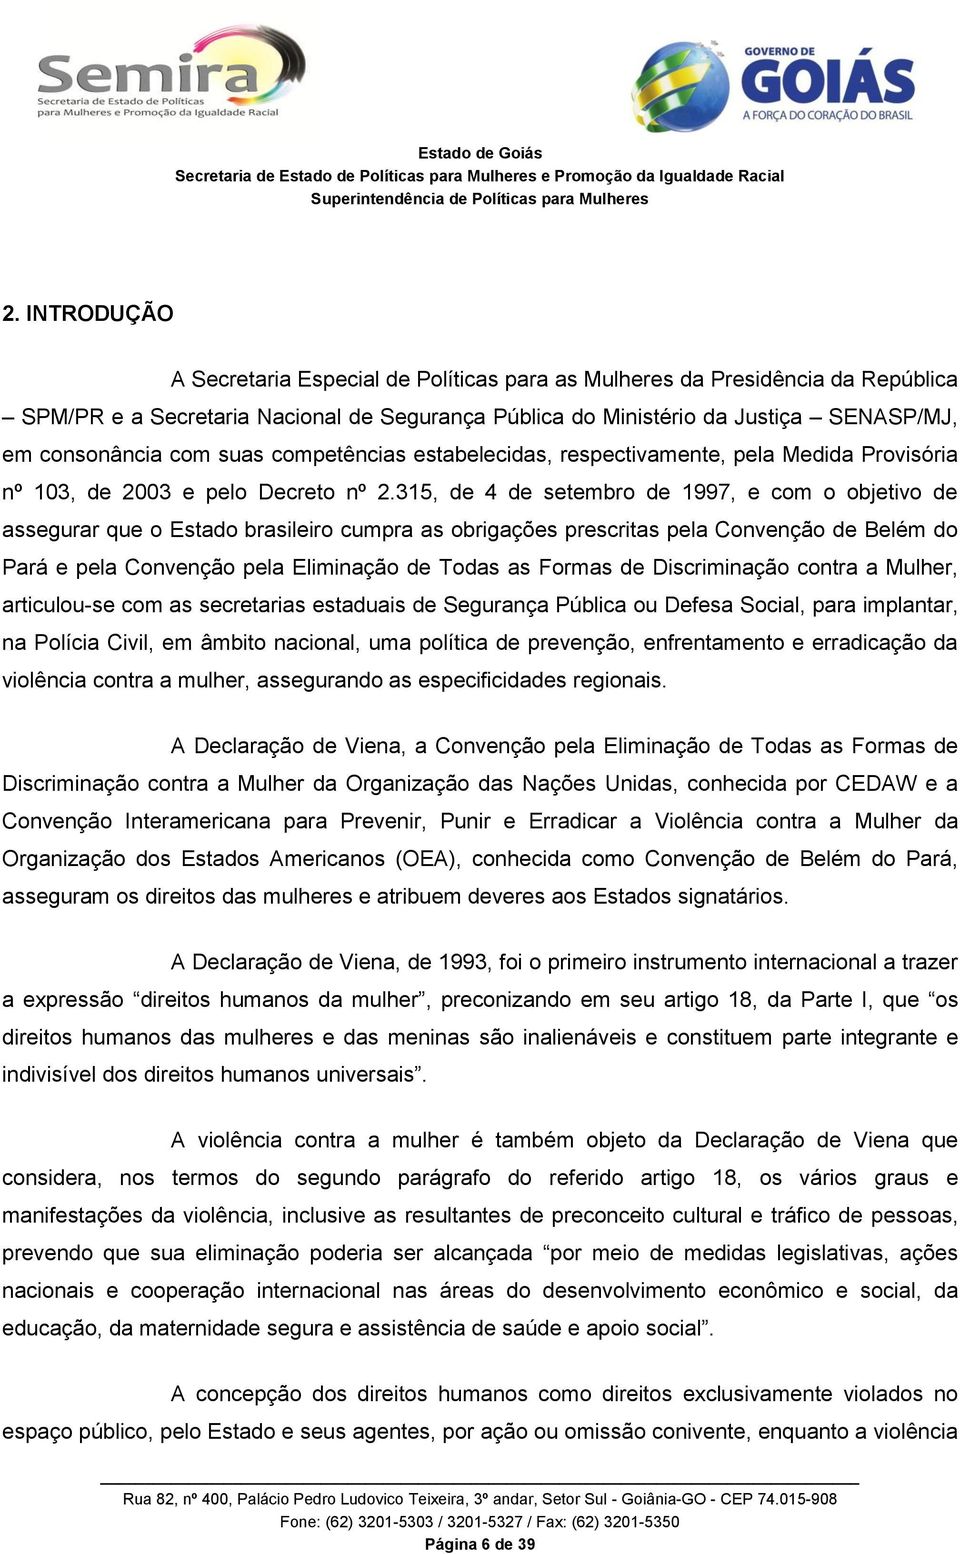 315, de 4 de setembro de 1997, e com o objetivo de assegurar que o Estado brasileiro cumpra as obrigações prescritas pela Convenção de Belém do Pará e pela Convenção pela Eliminação de Todas as